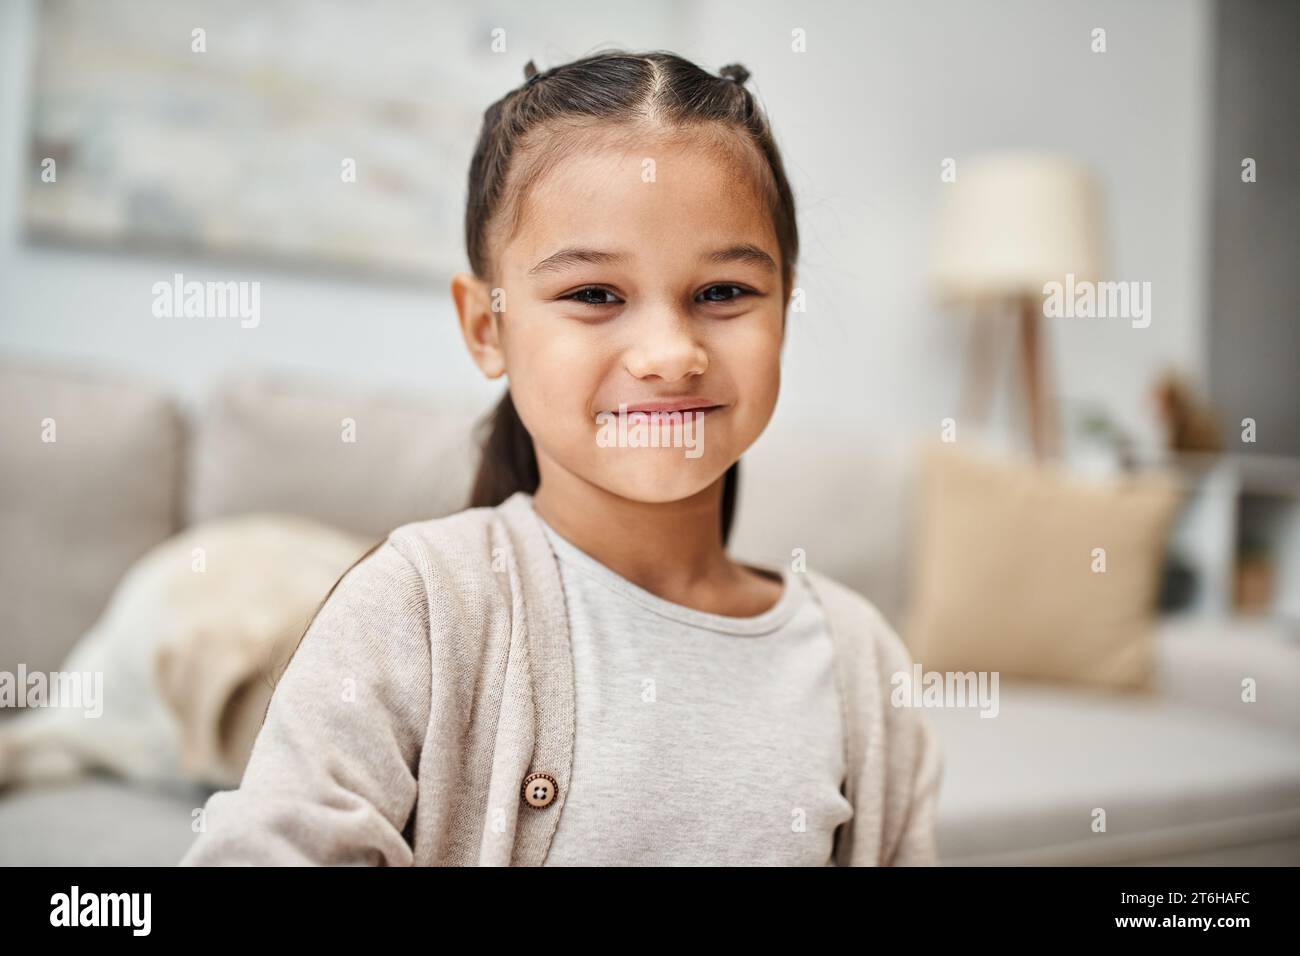 ritratto di una ragazza felice dell'età elementare con i capelli bruna sorridenti davanti alla macchina fotografica in un appartamento moderno Foto Stock